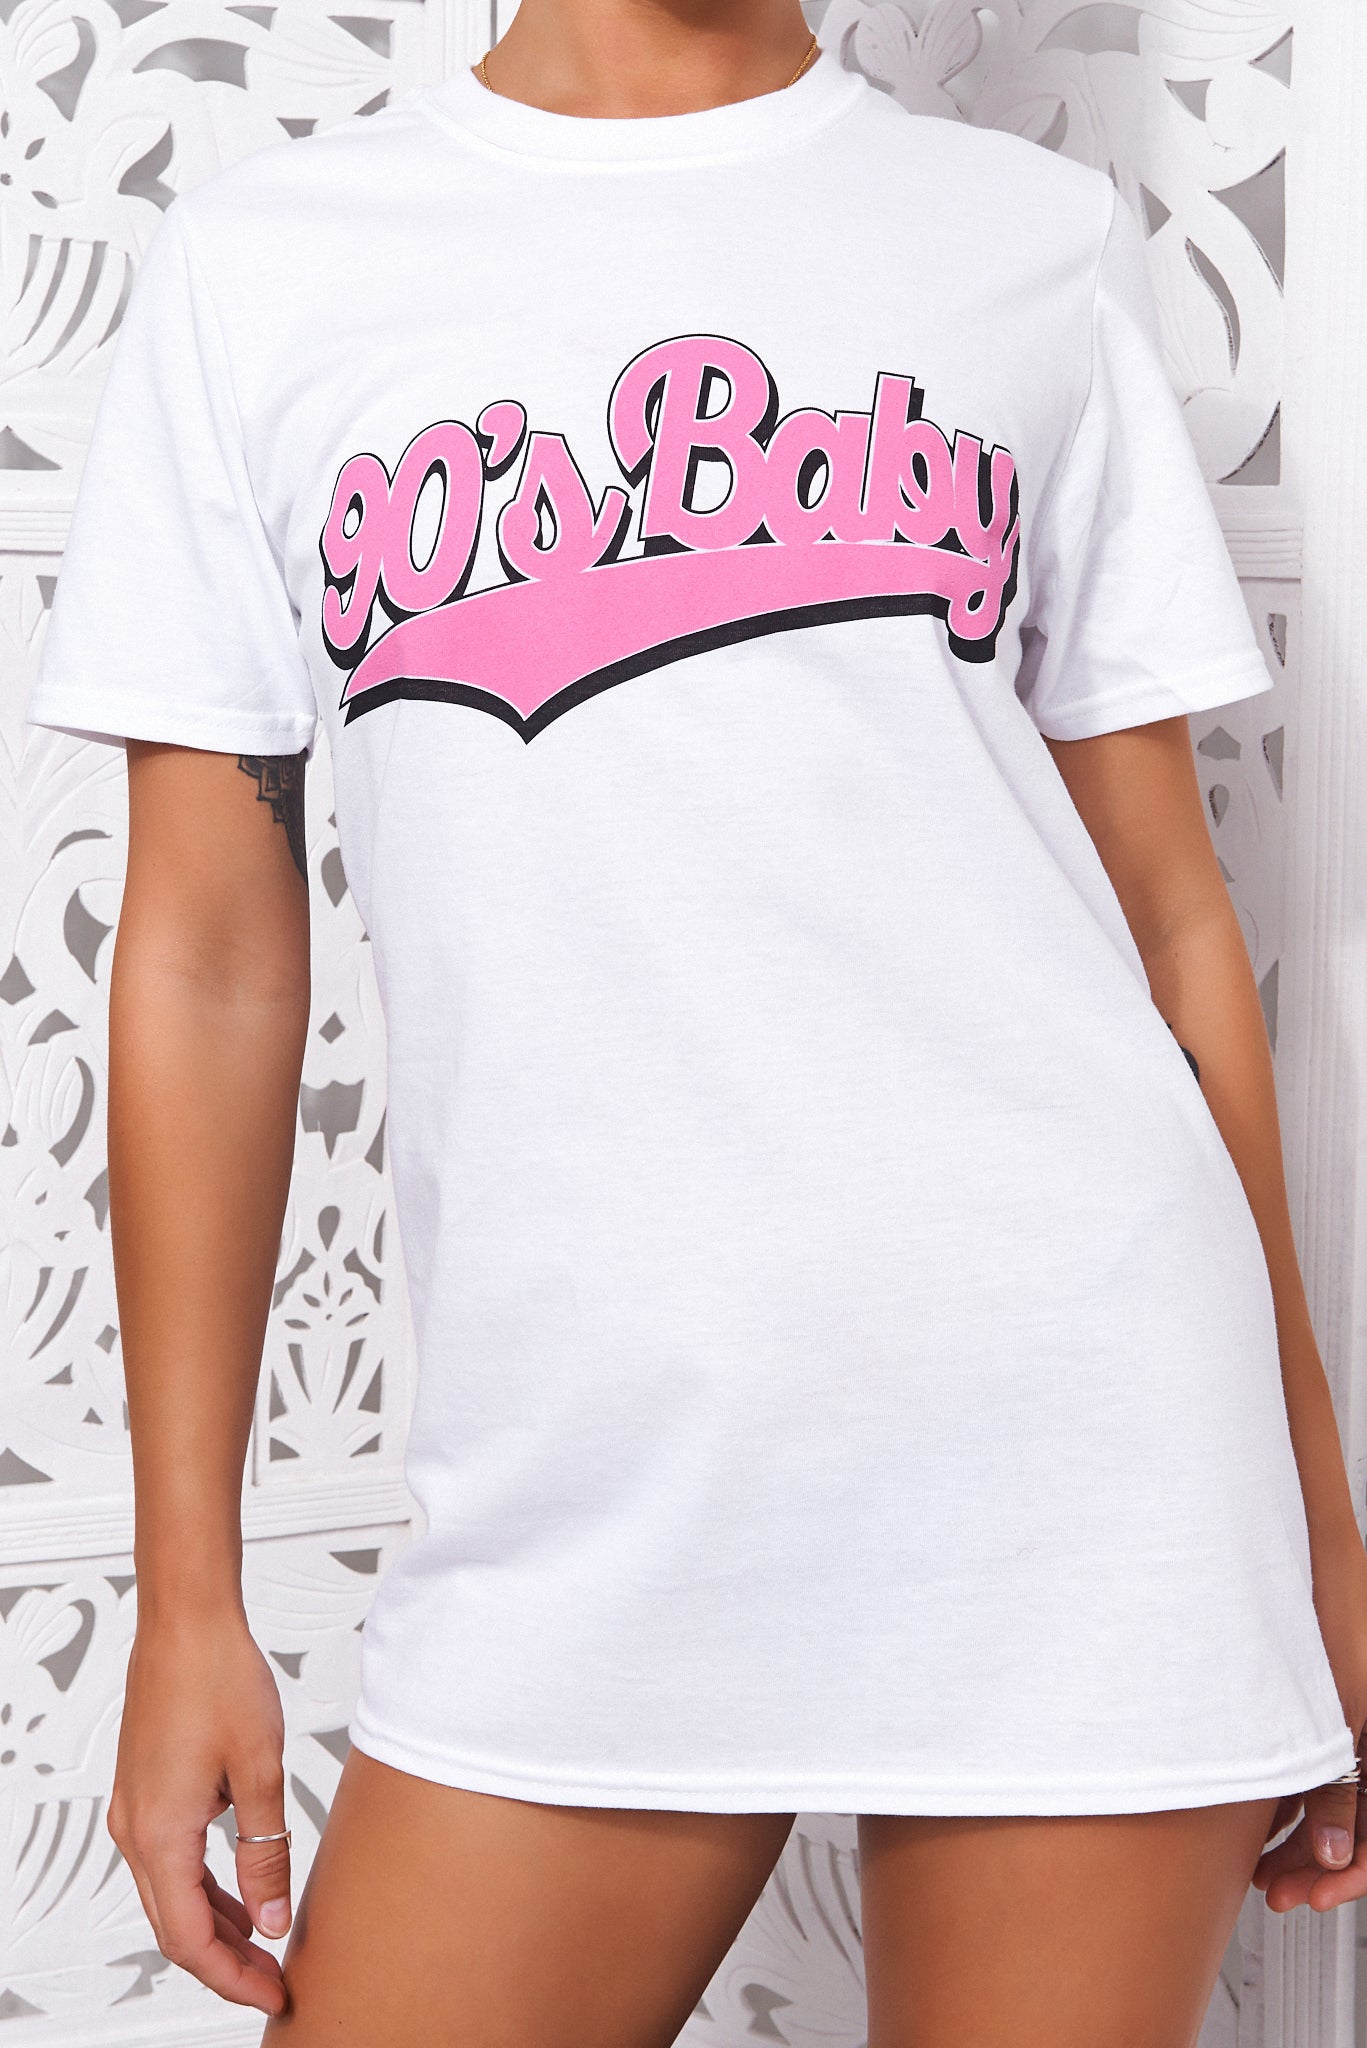 90s Baby White & Pink Oversized Slogan T-Shirt